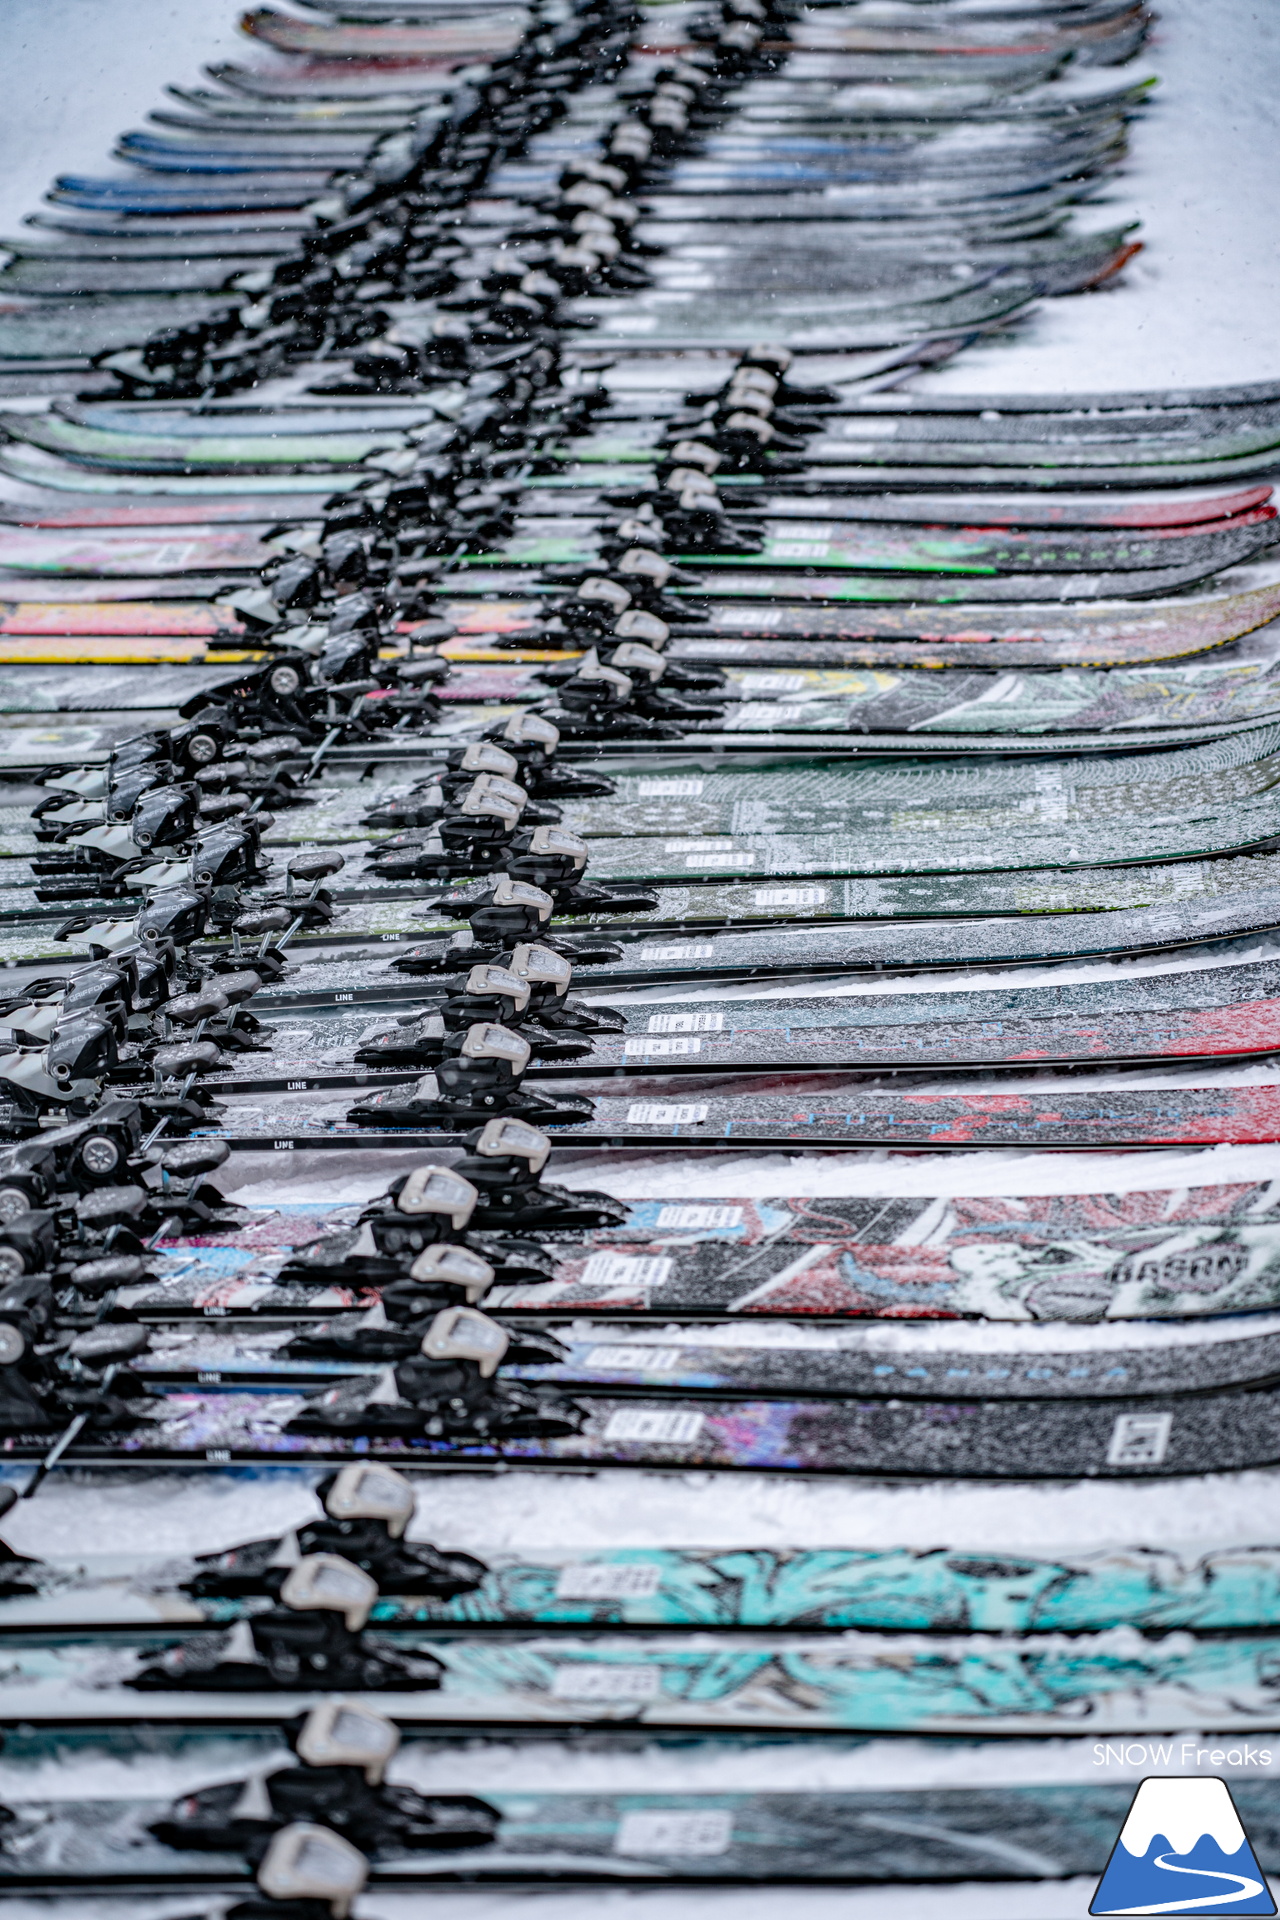 絶好のふかふか新雪コンディションに恵まれて！『パドルクラブ』太板だけのニューモデルスキー試乗会「ファット・フリーライドスキー試乗会」開催 in かもい岳国際スキー場